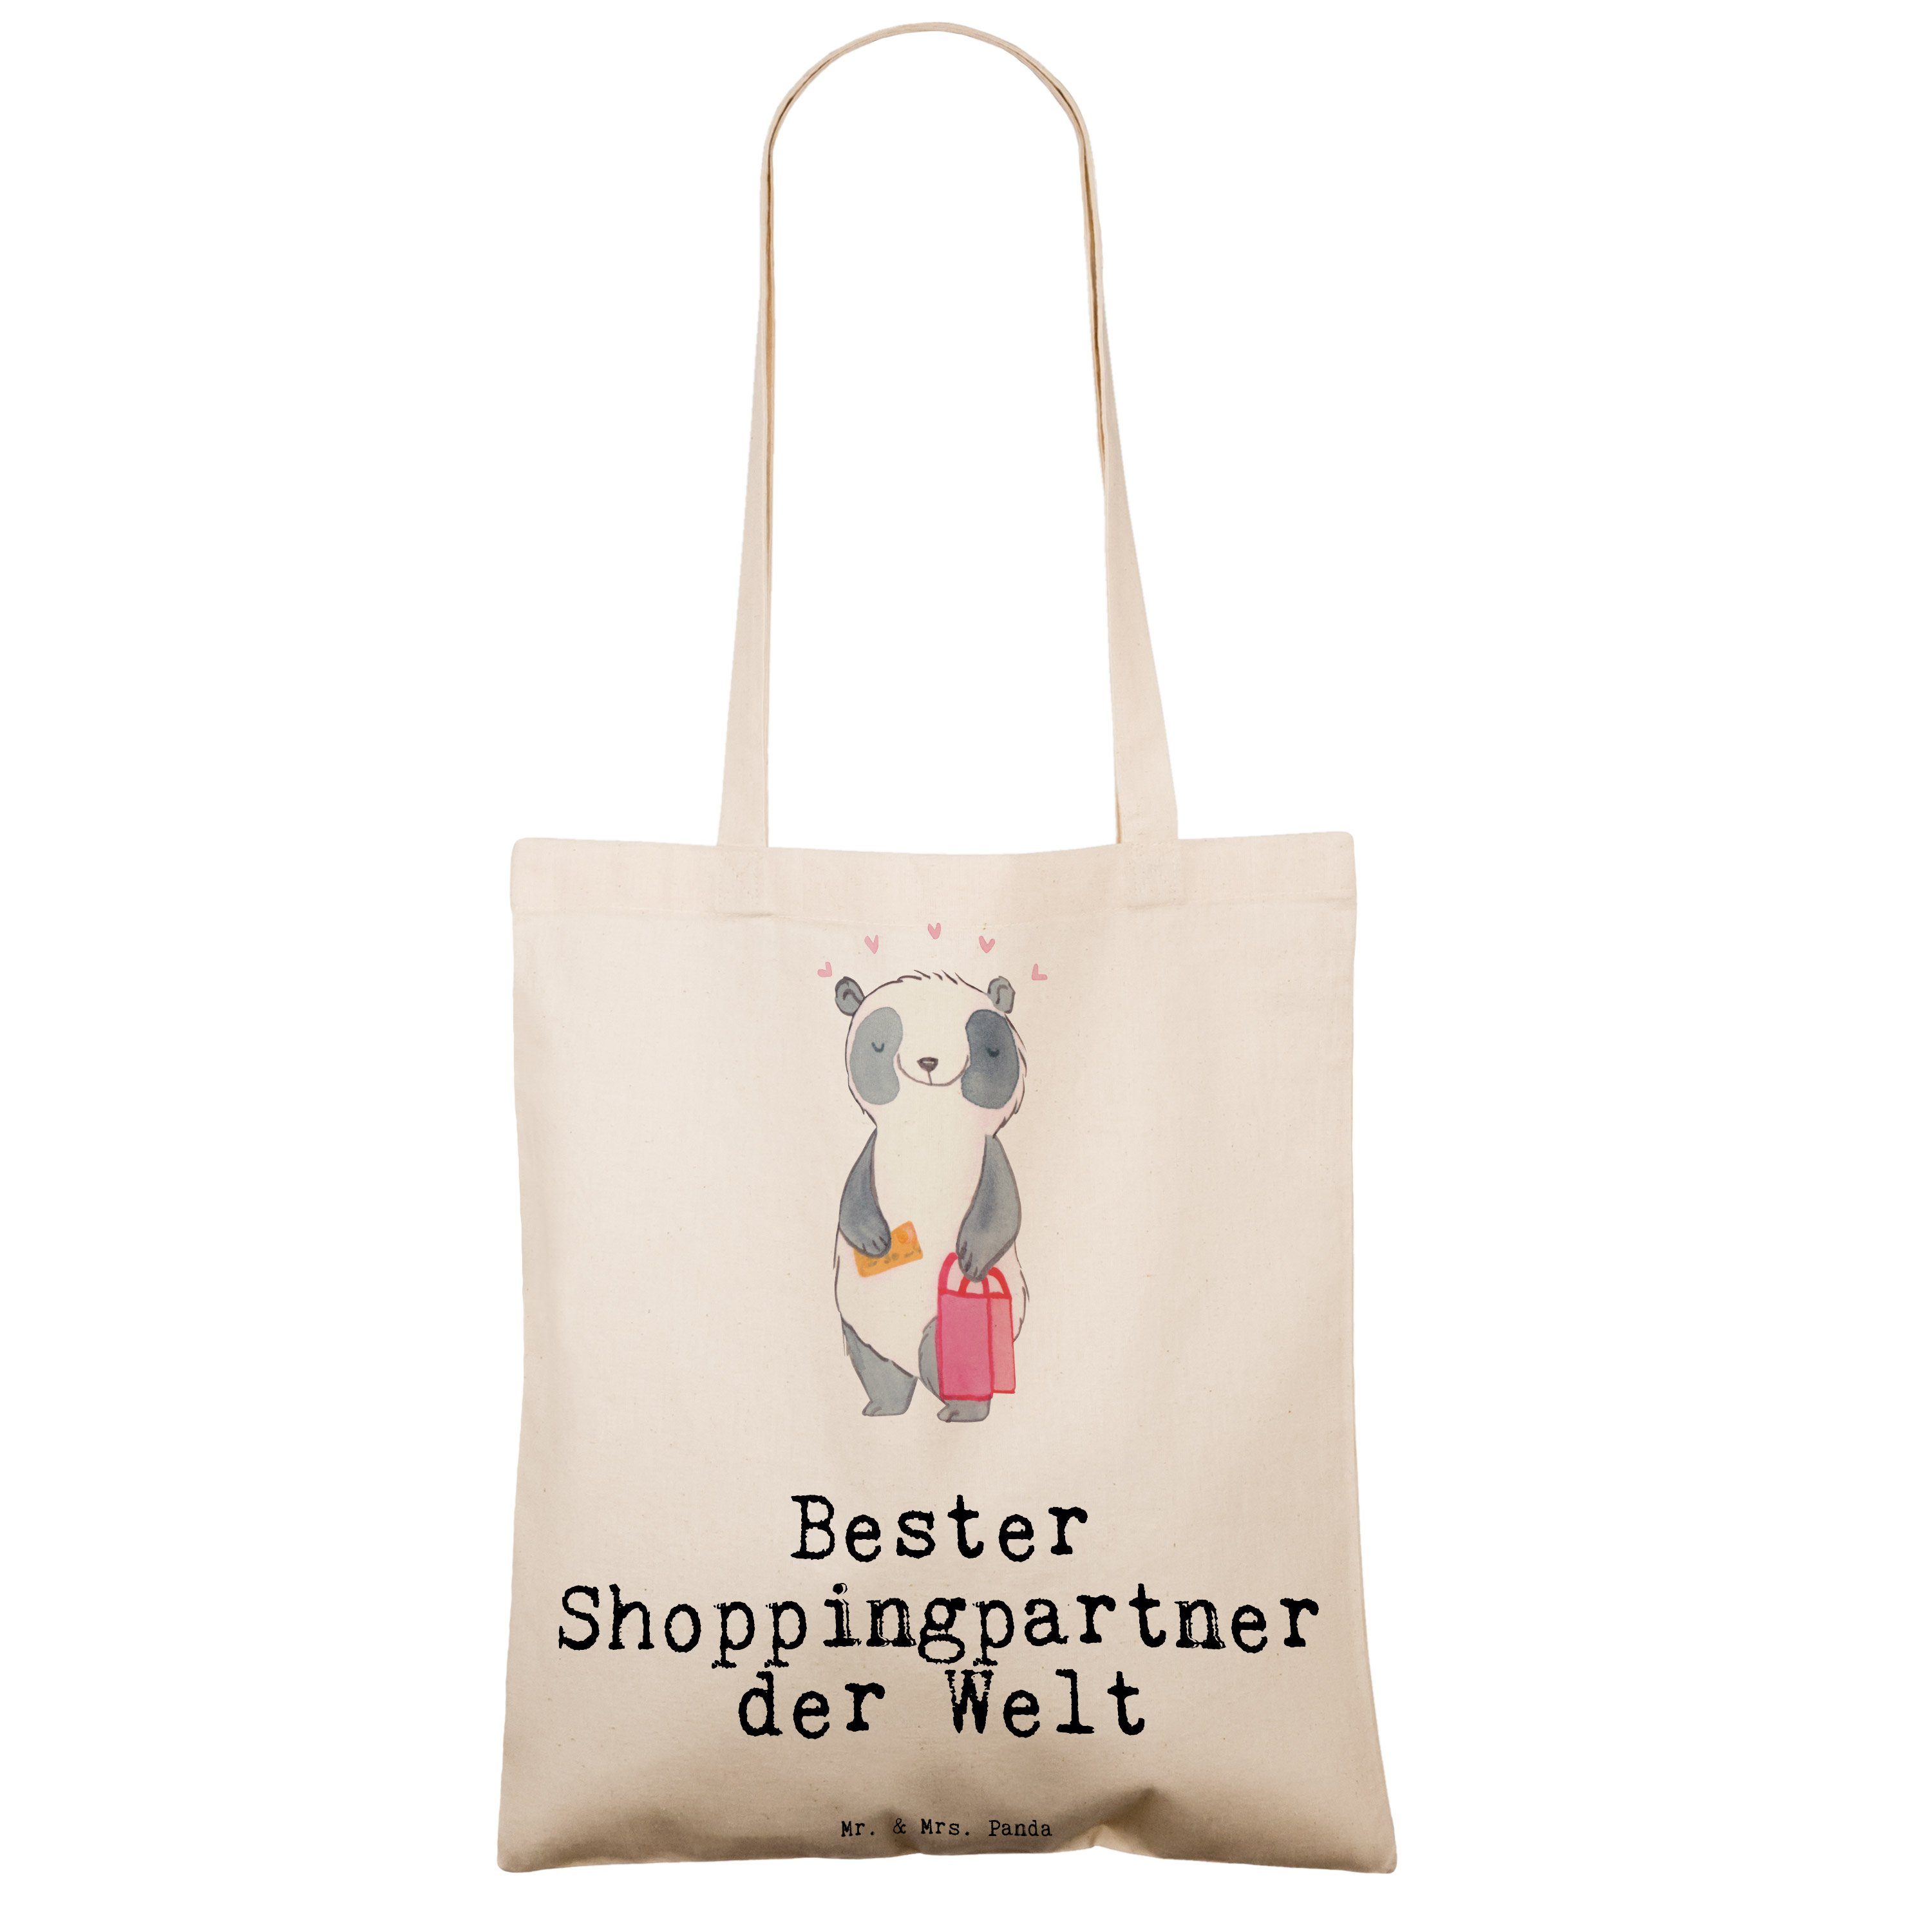 Tragetasche - Transparent Geschenk, Panda Einka Mrs. Welt der - Shoppingpartner & (1-tlg) Panda Bester Mr.